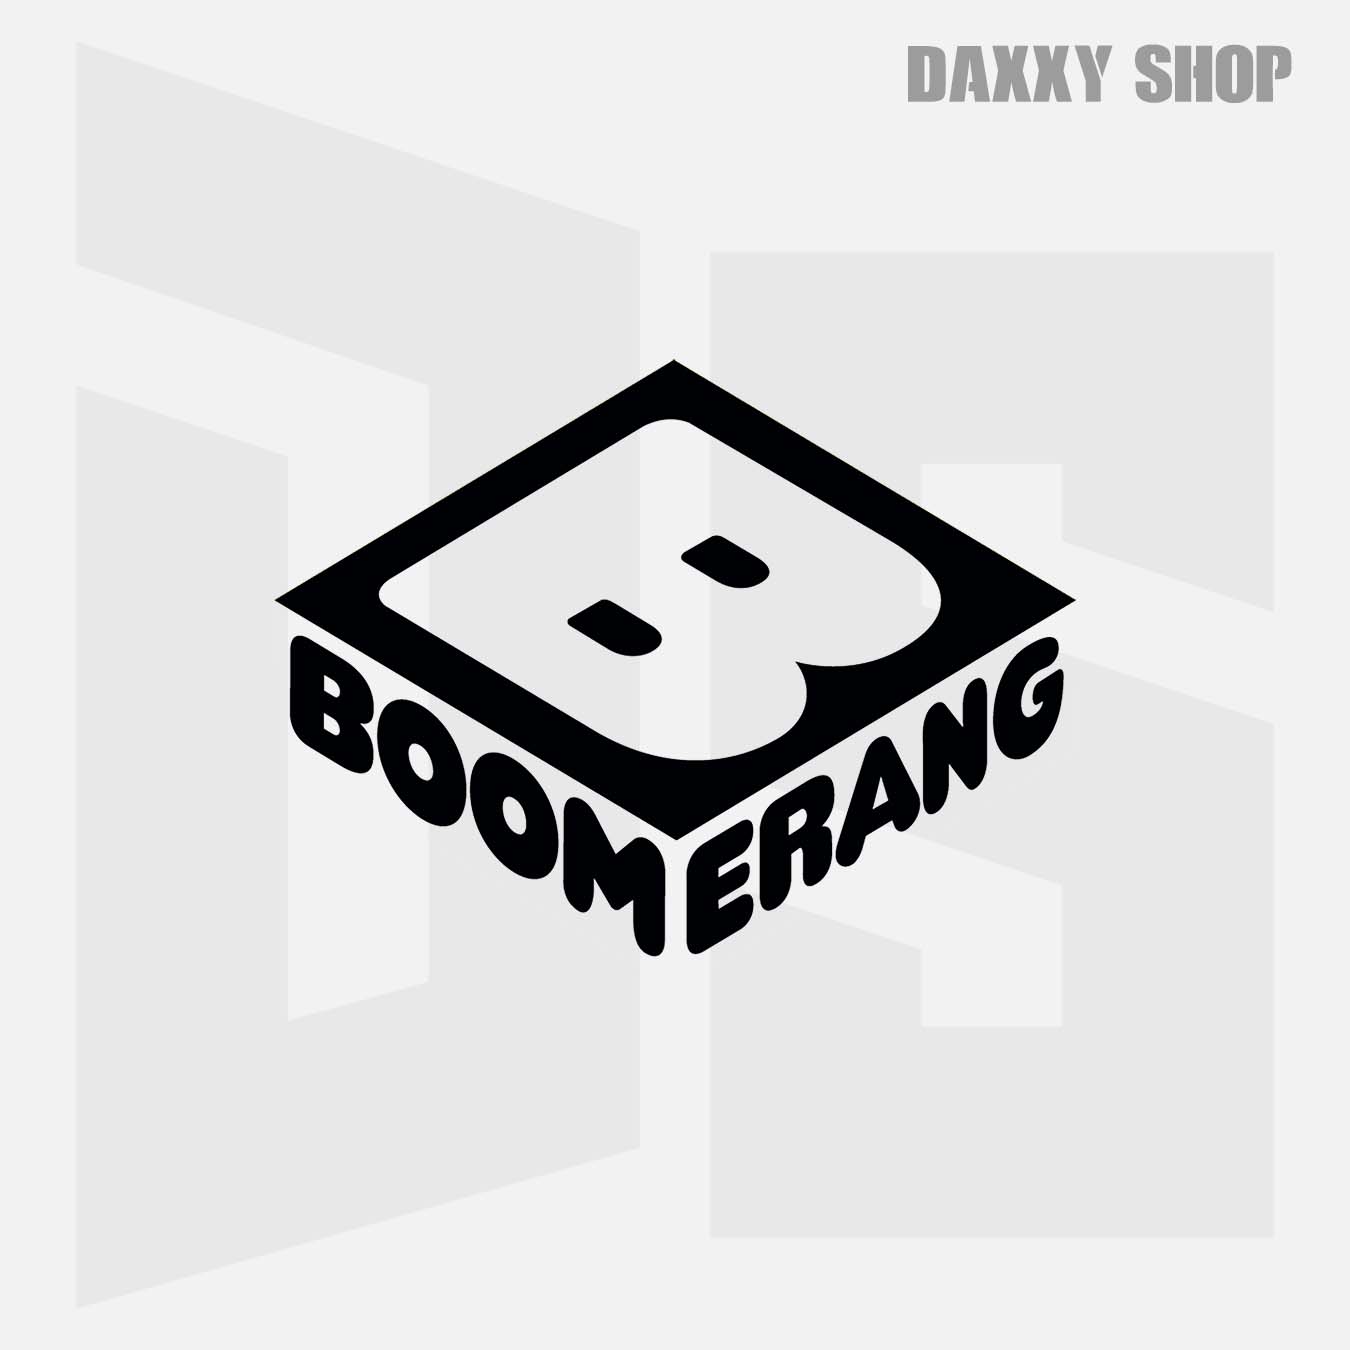 Boomerang daxxyshop.com